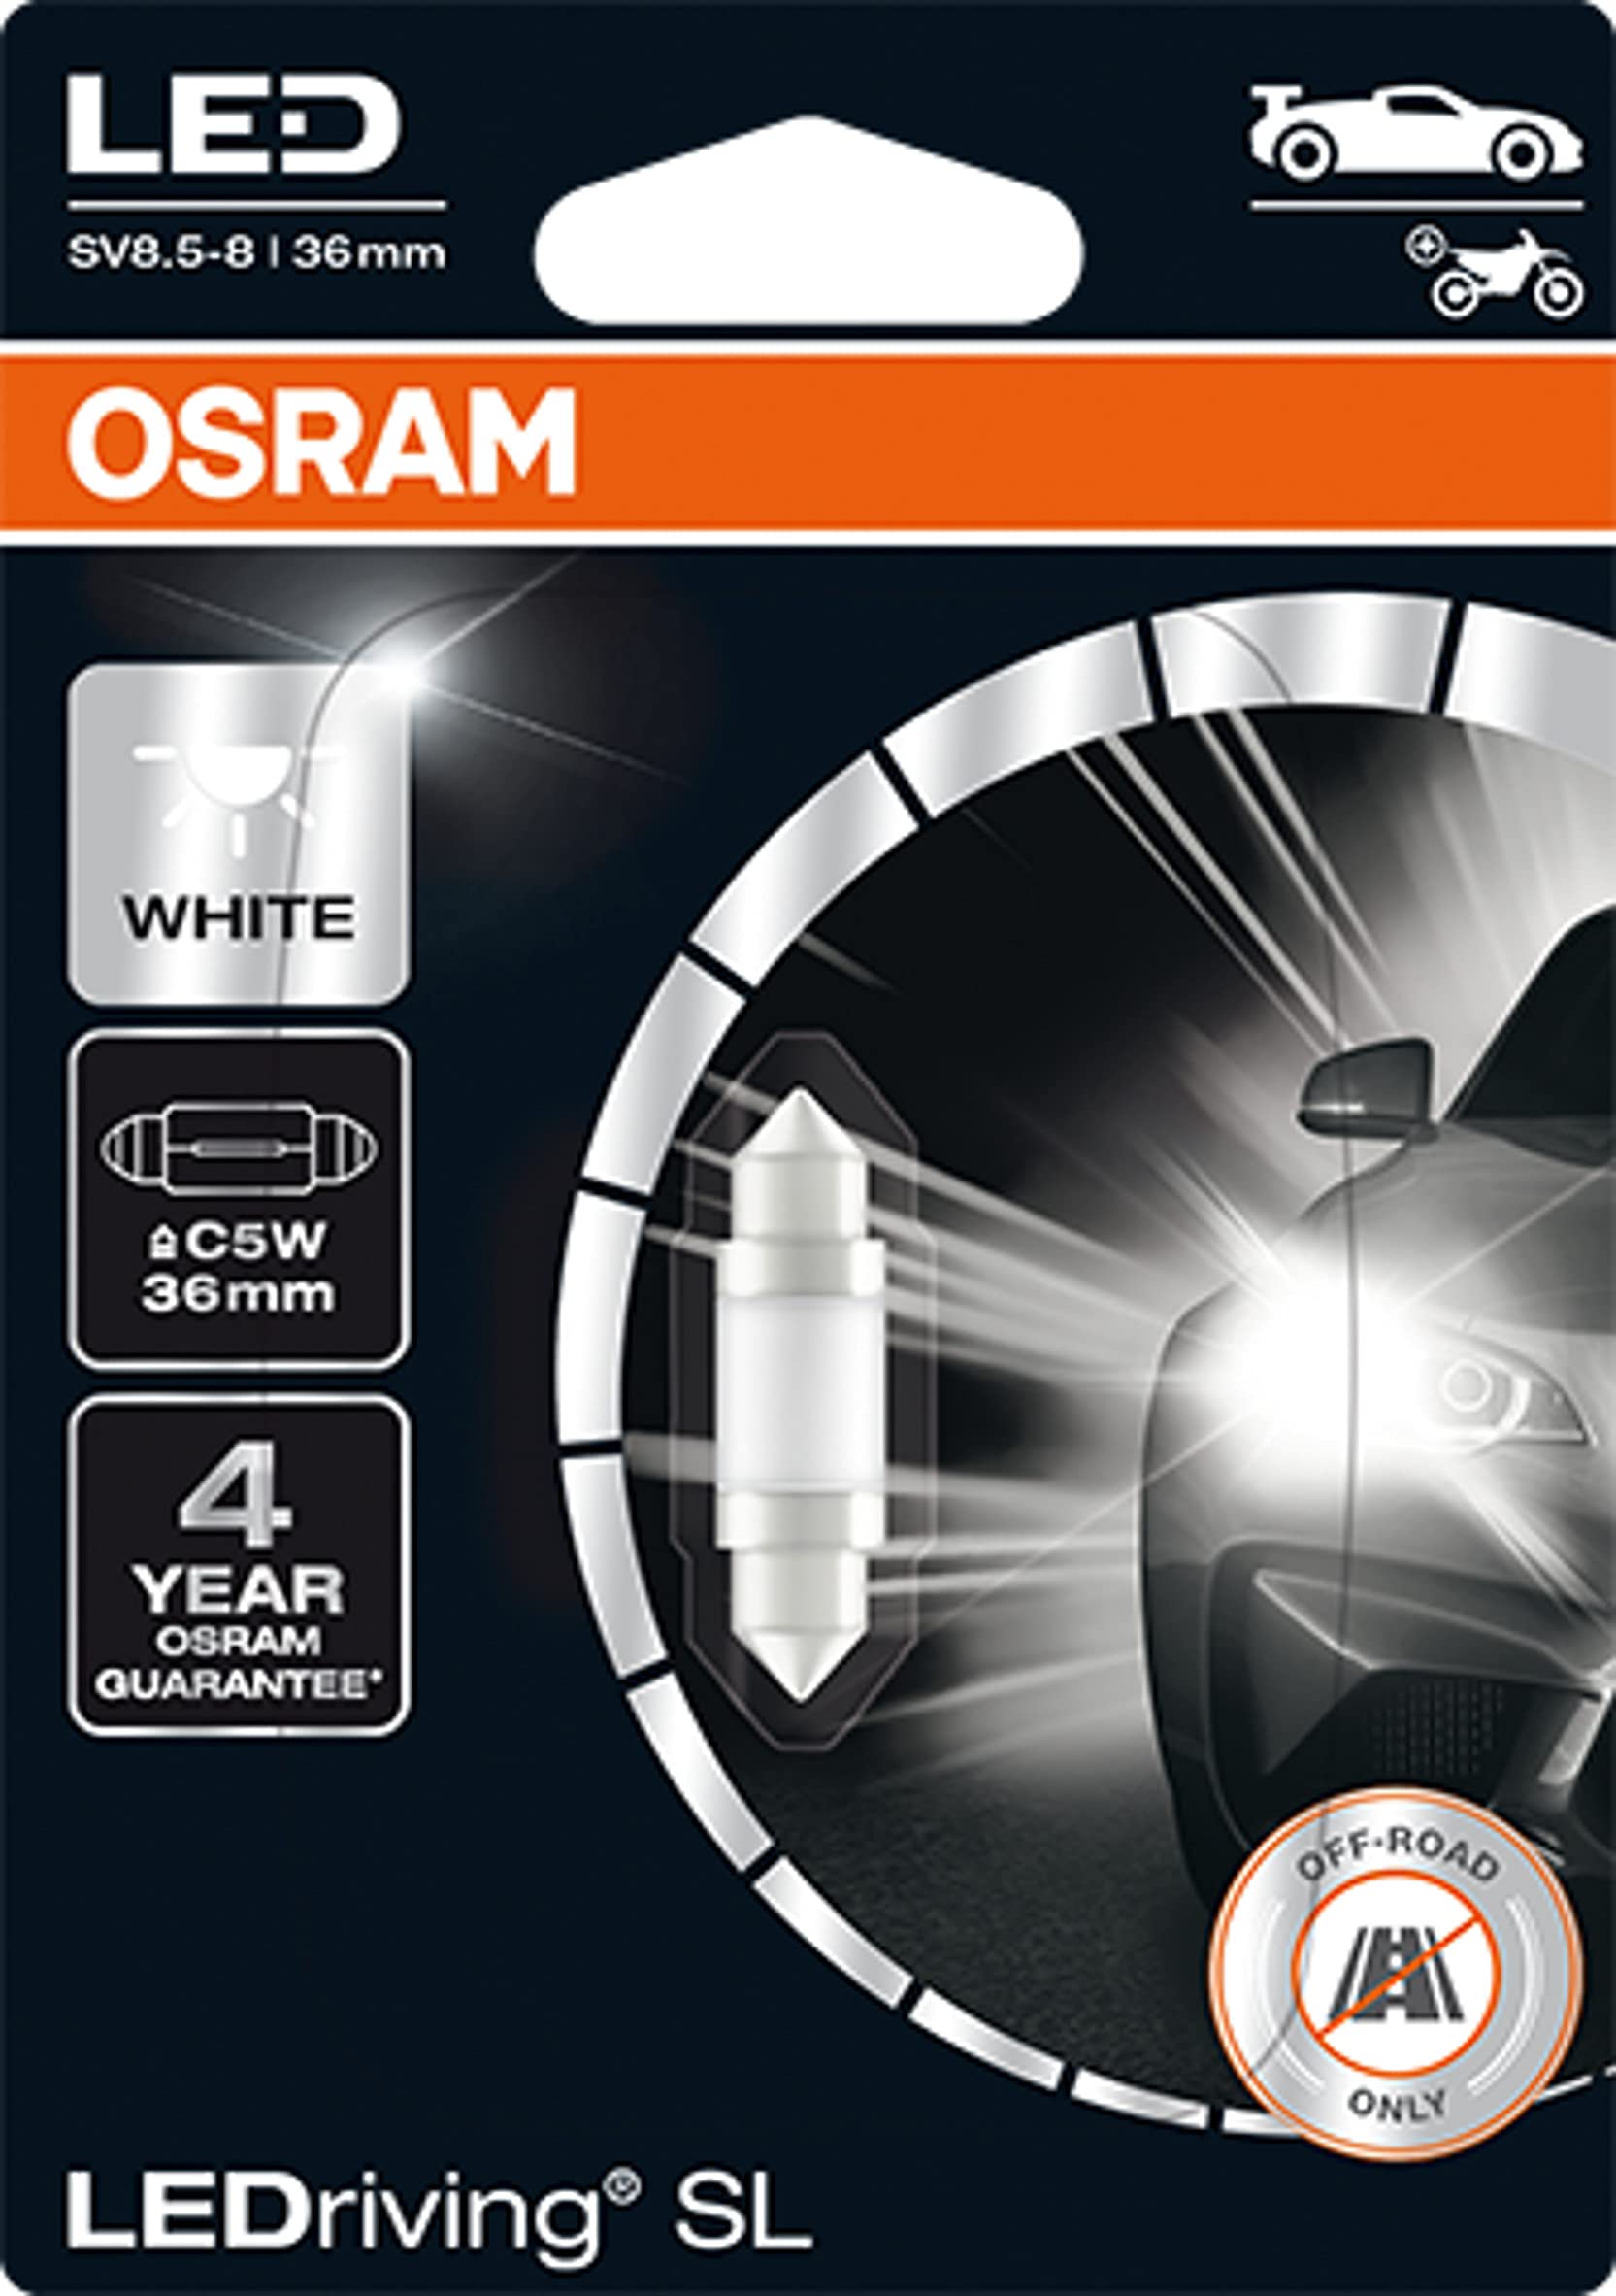 OSRAM KIT 2 LÂMPADAS LED LED C5W (36 mm) LEDriving®